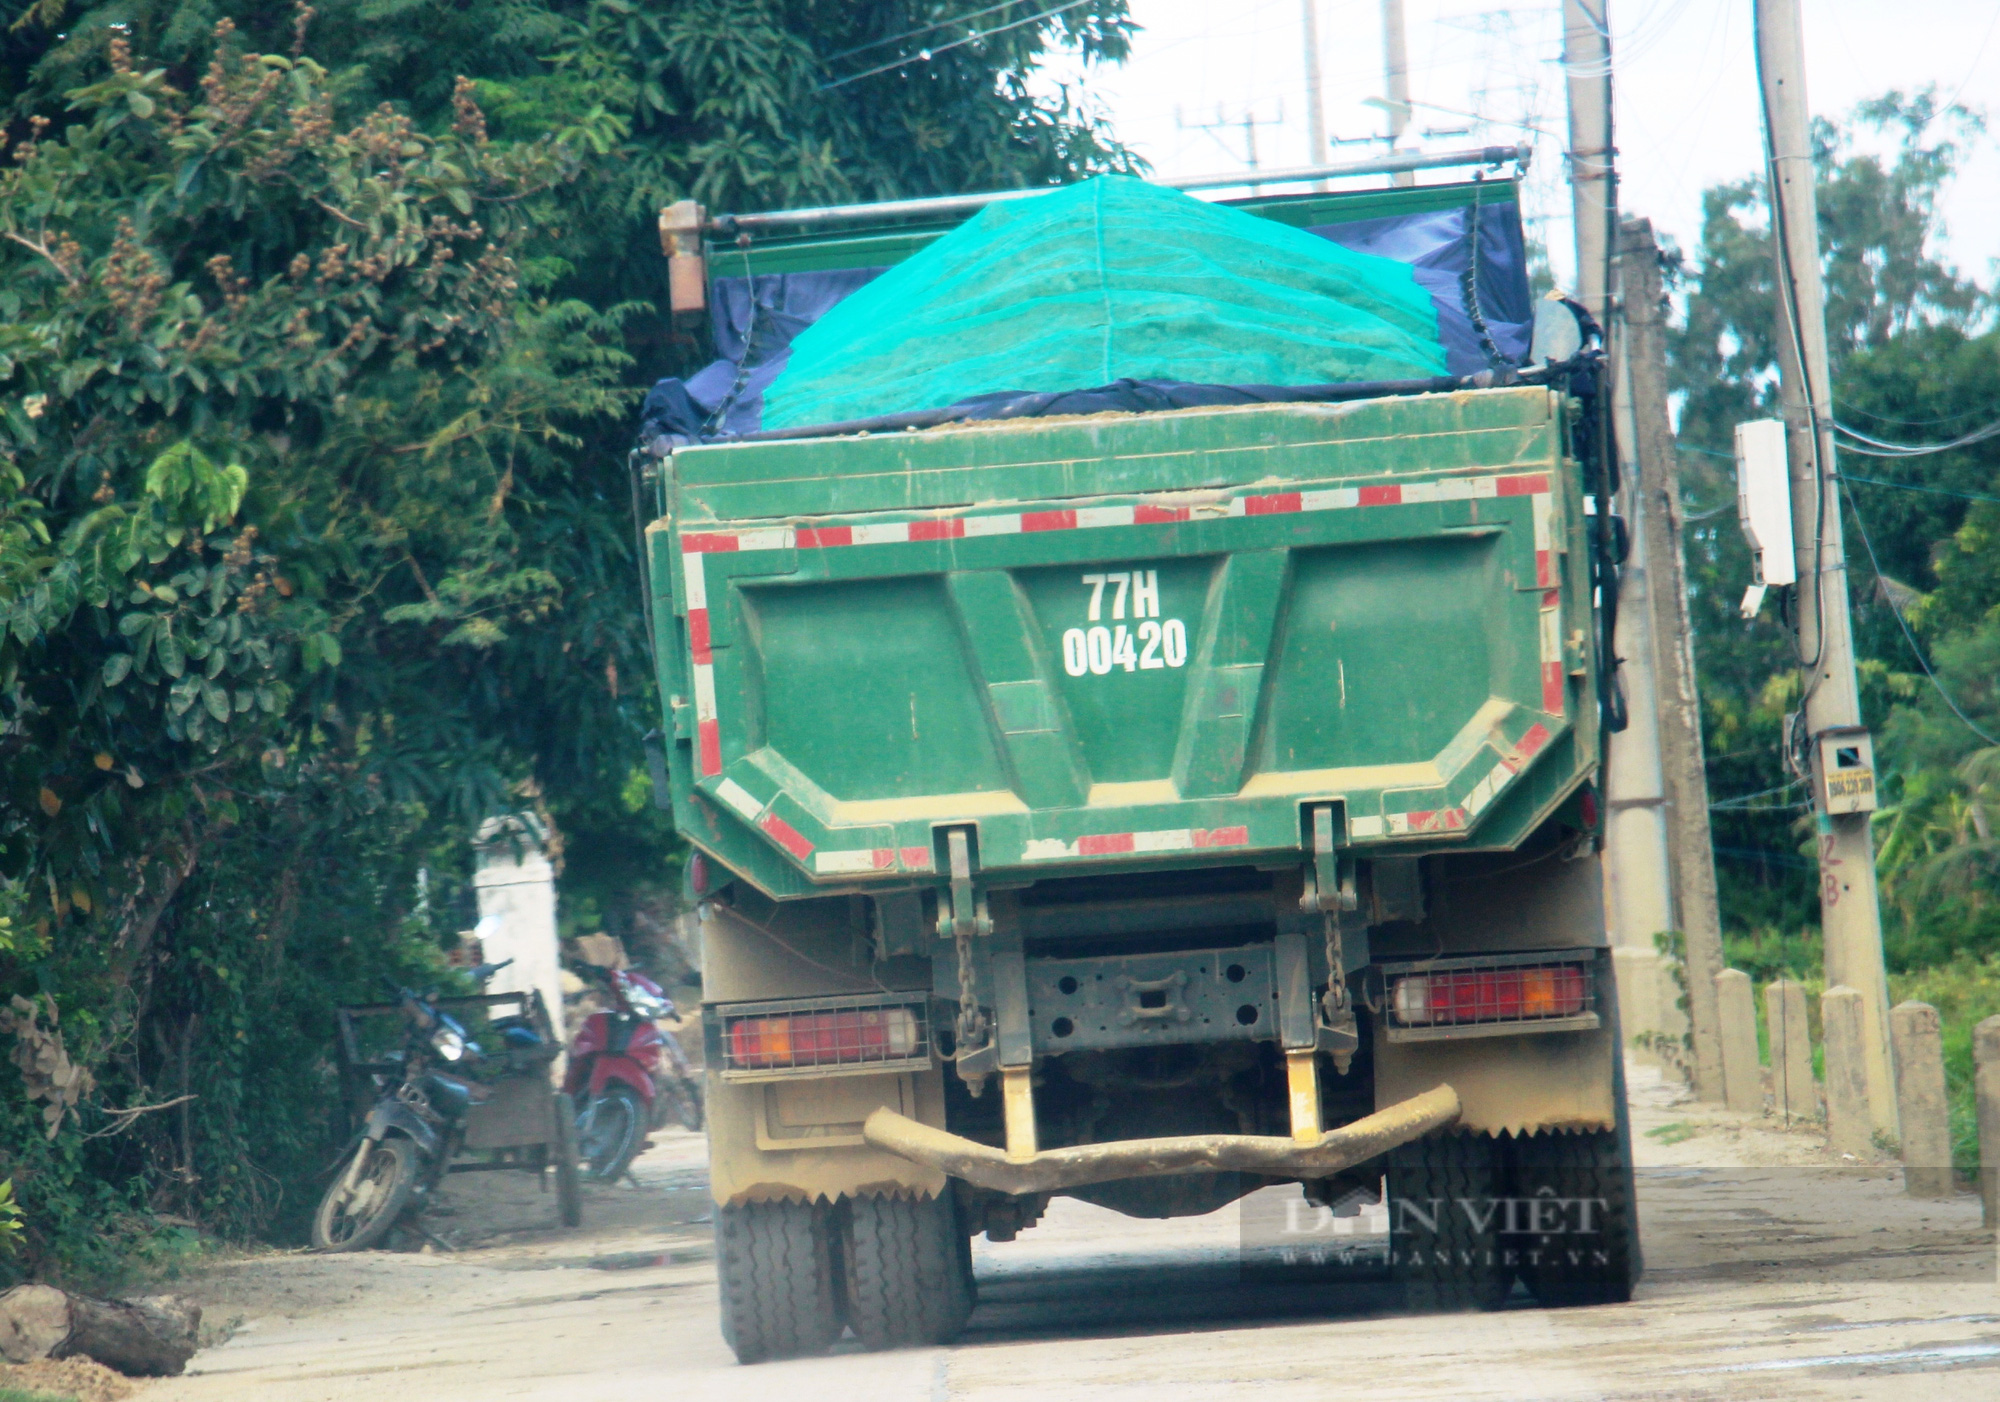 Đoàn xe “siêu tải” logo Hưng Việt cơi nới thành thùng, nghênh ngang cày xéo cung đường ở Bình Định  - Ảnh 2.